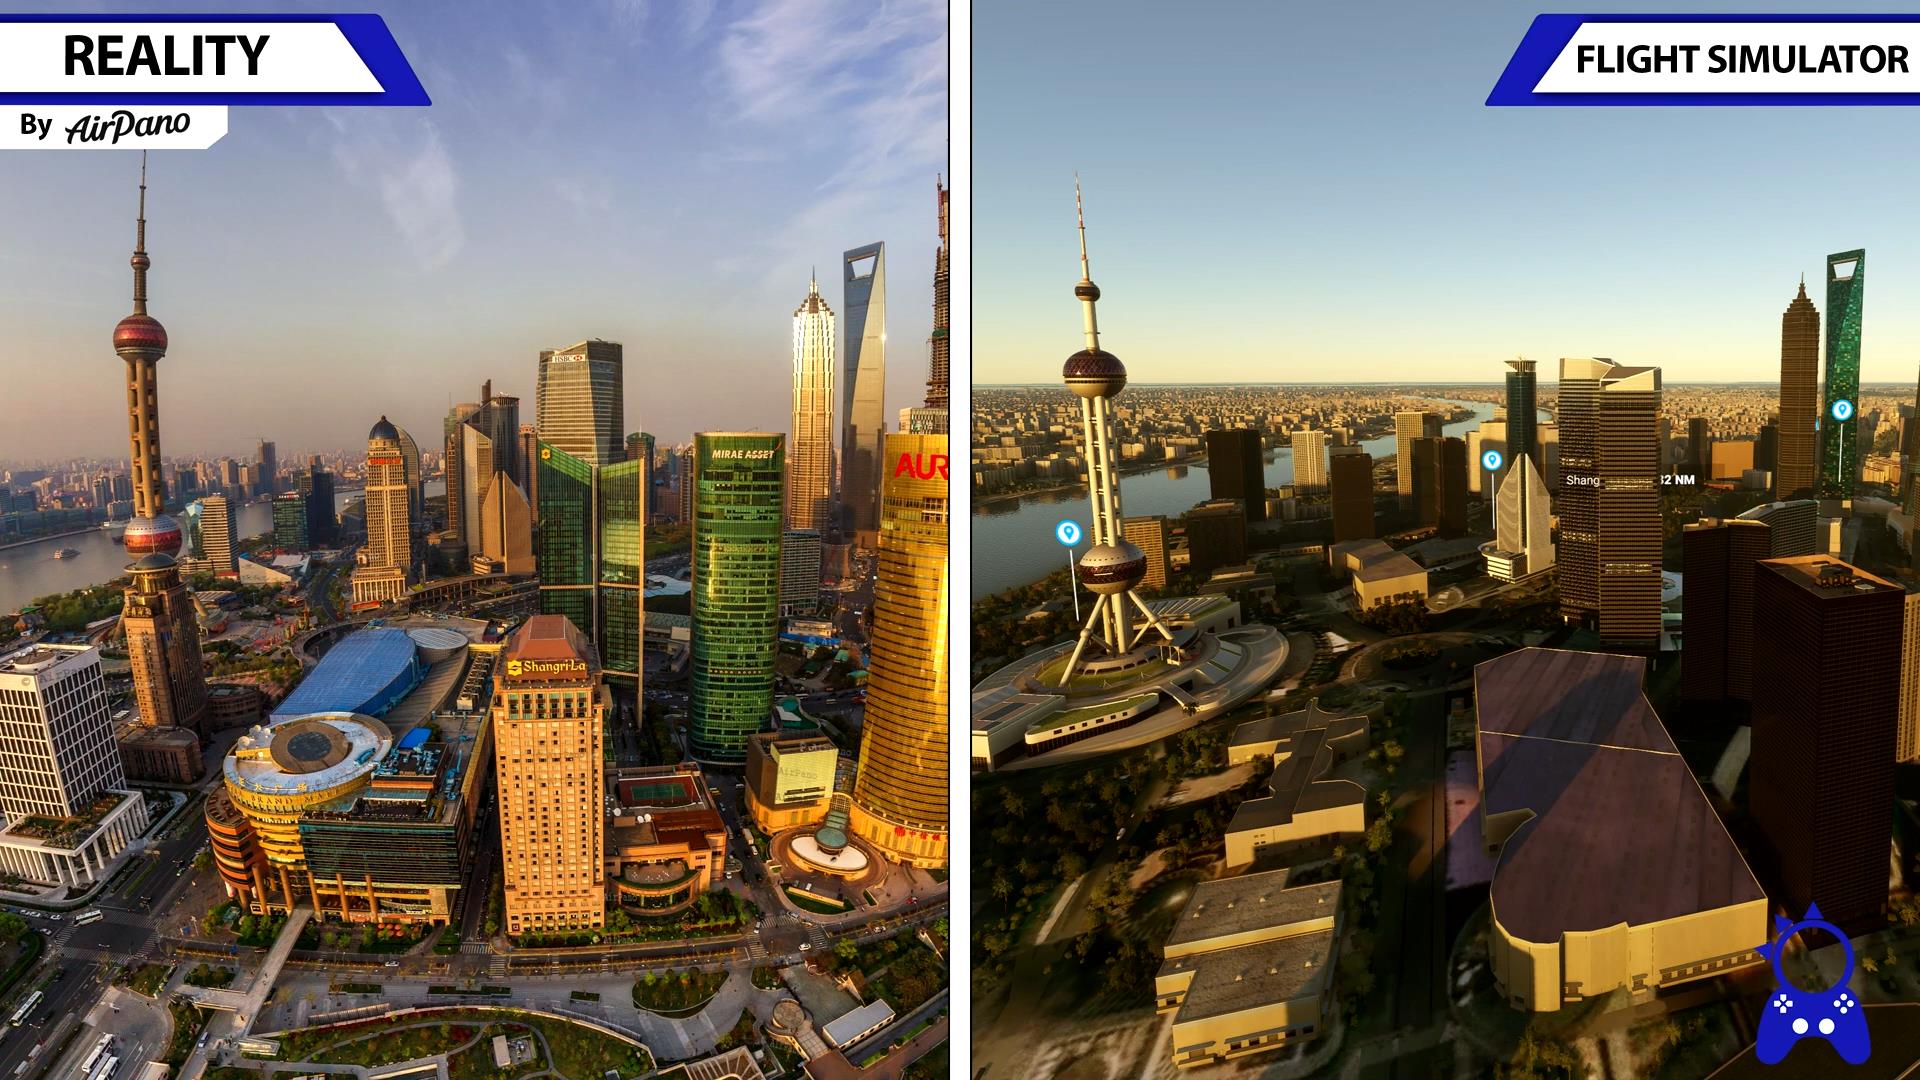 《微软飞行模拟》游戏画面与现实场景对比视频-703 